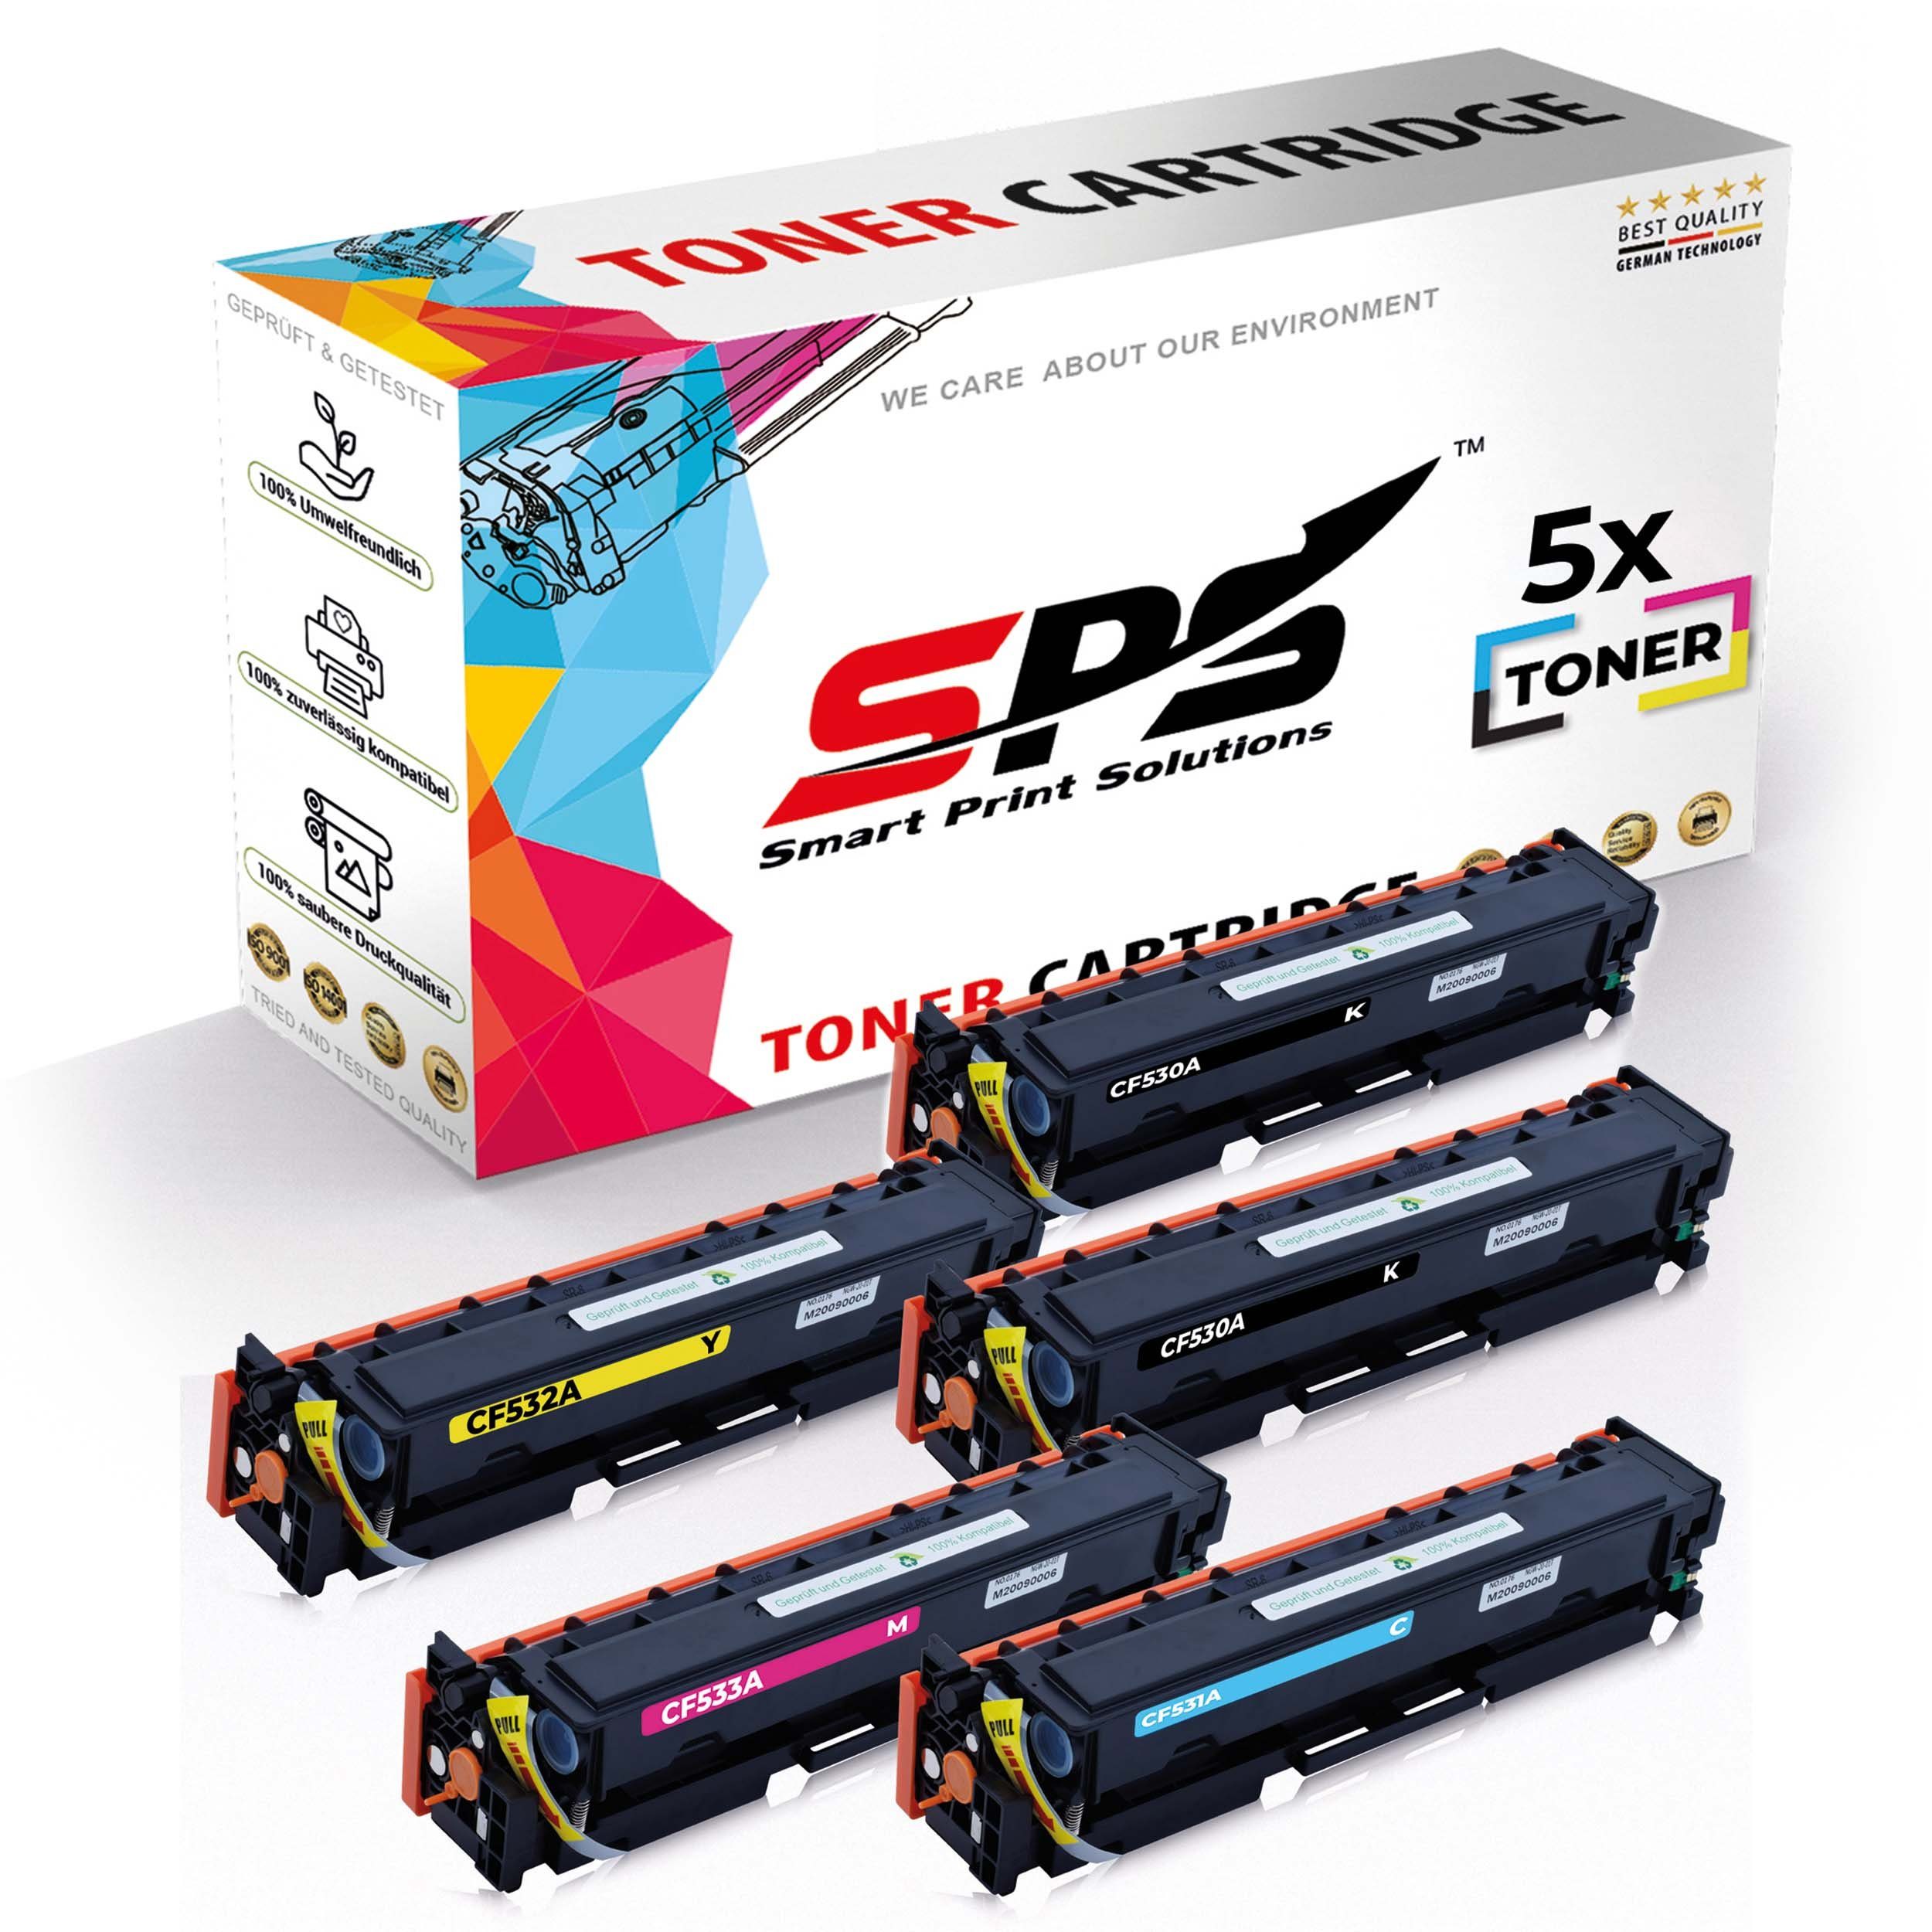 SPS Tonerkartusche 5x Multipack Set Kompatibel für HP Color LaserJet CP 2020 Series (304A, (5er Pack)